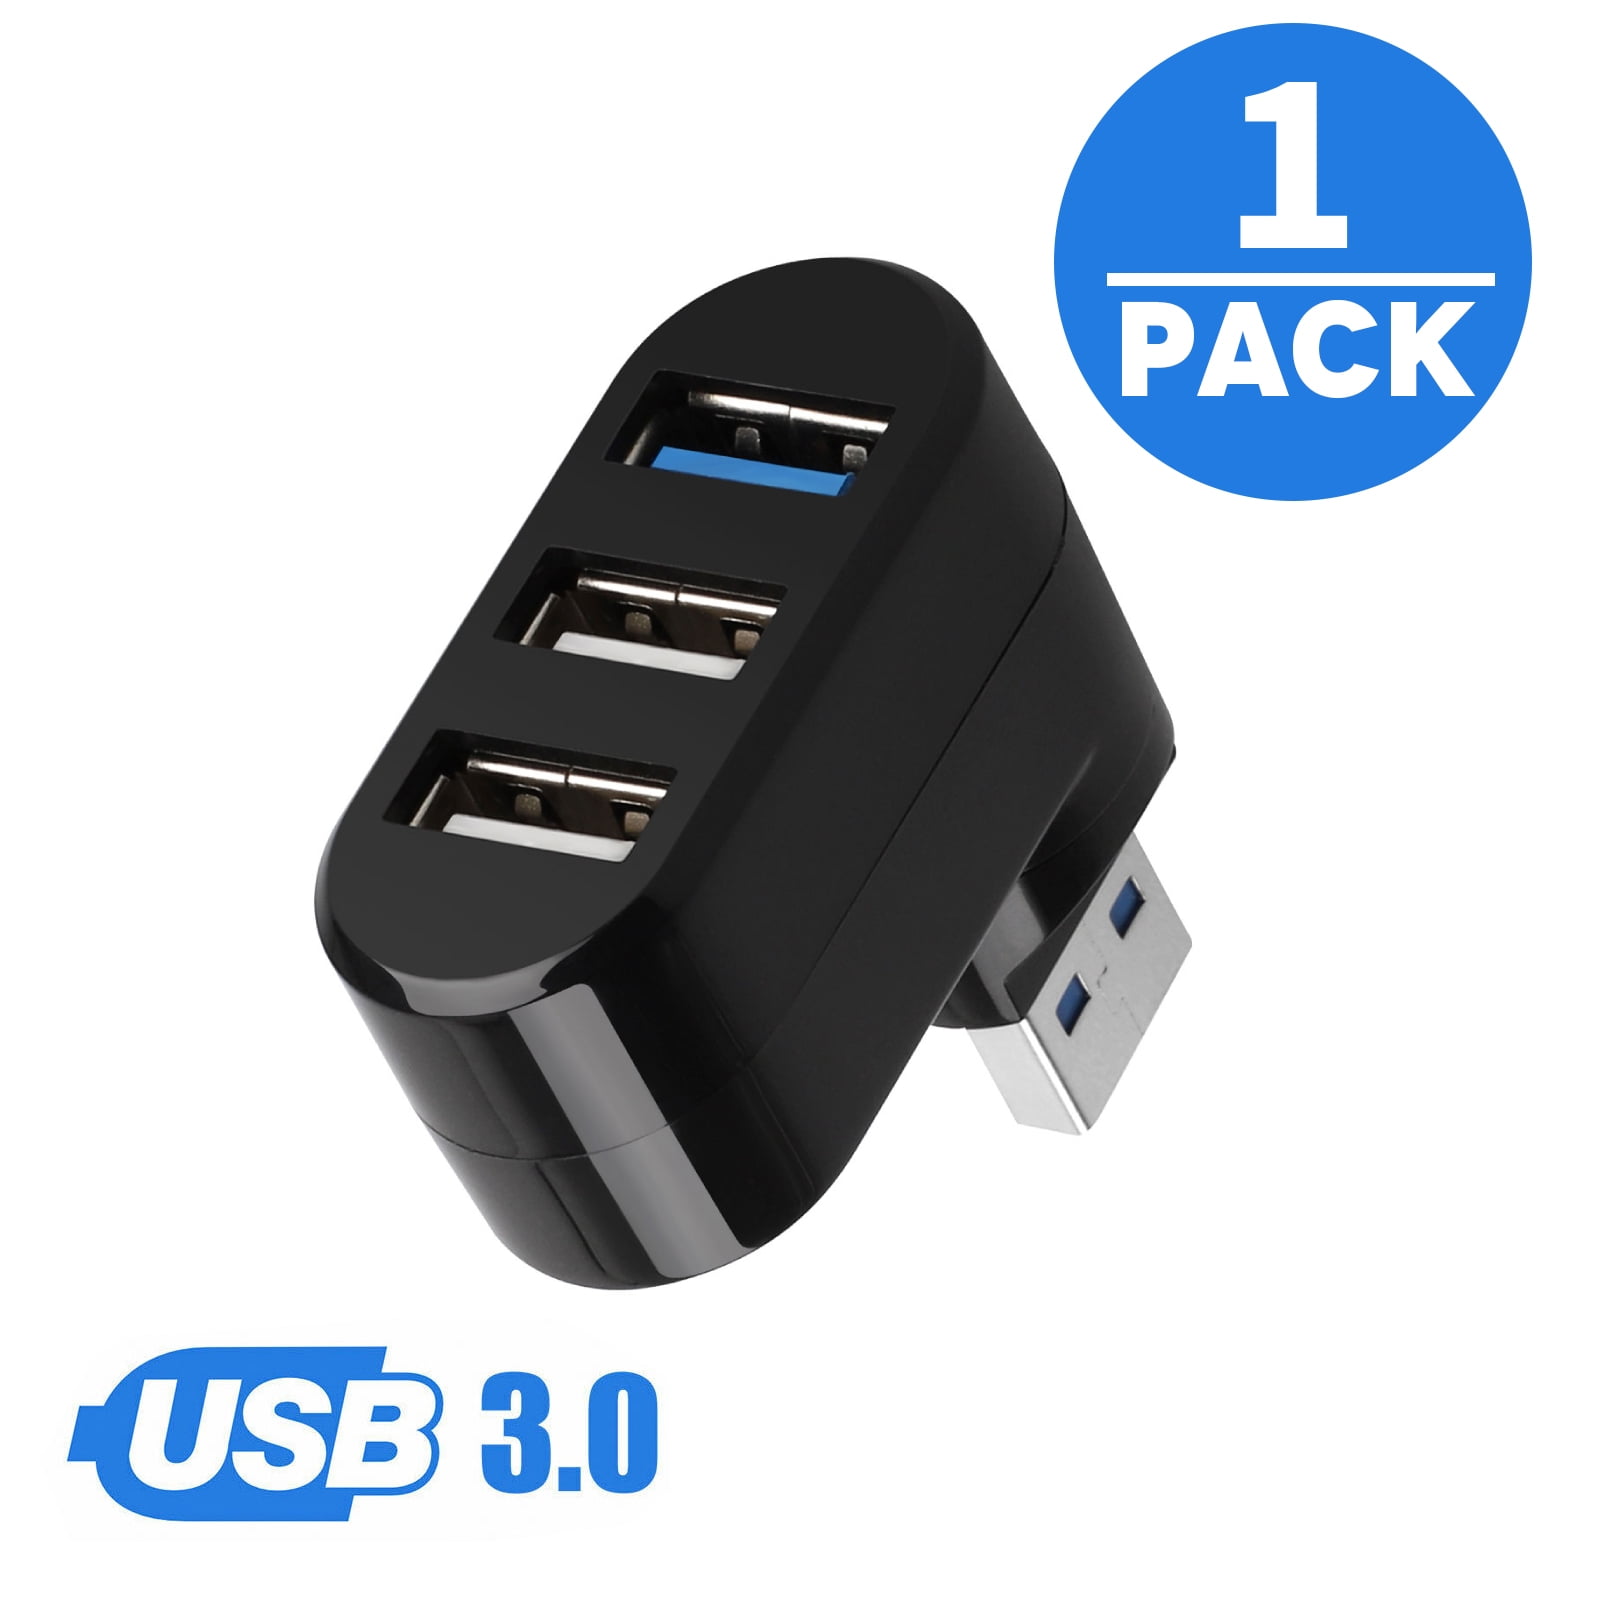 TSV USB Splitter 3 Ports USB Hub Adapter Rotatable Data Hub 2.0 Extender  for Mac, Laptop, Surface Pro, PS4, PC, Flash Drive, Mobile HDD, 1Pcs 